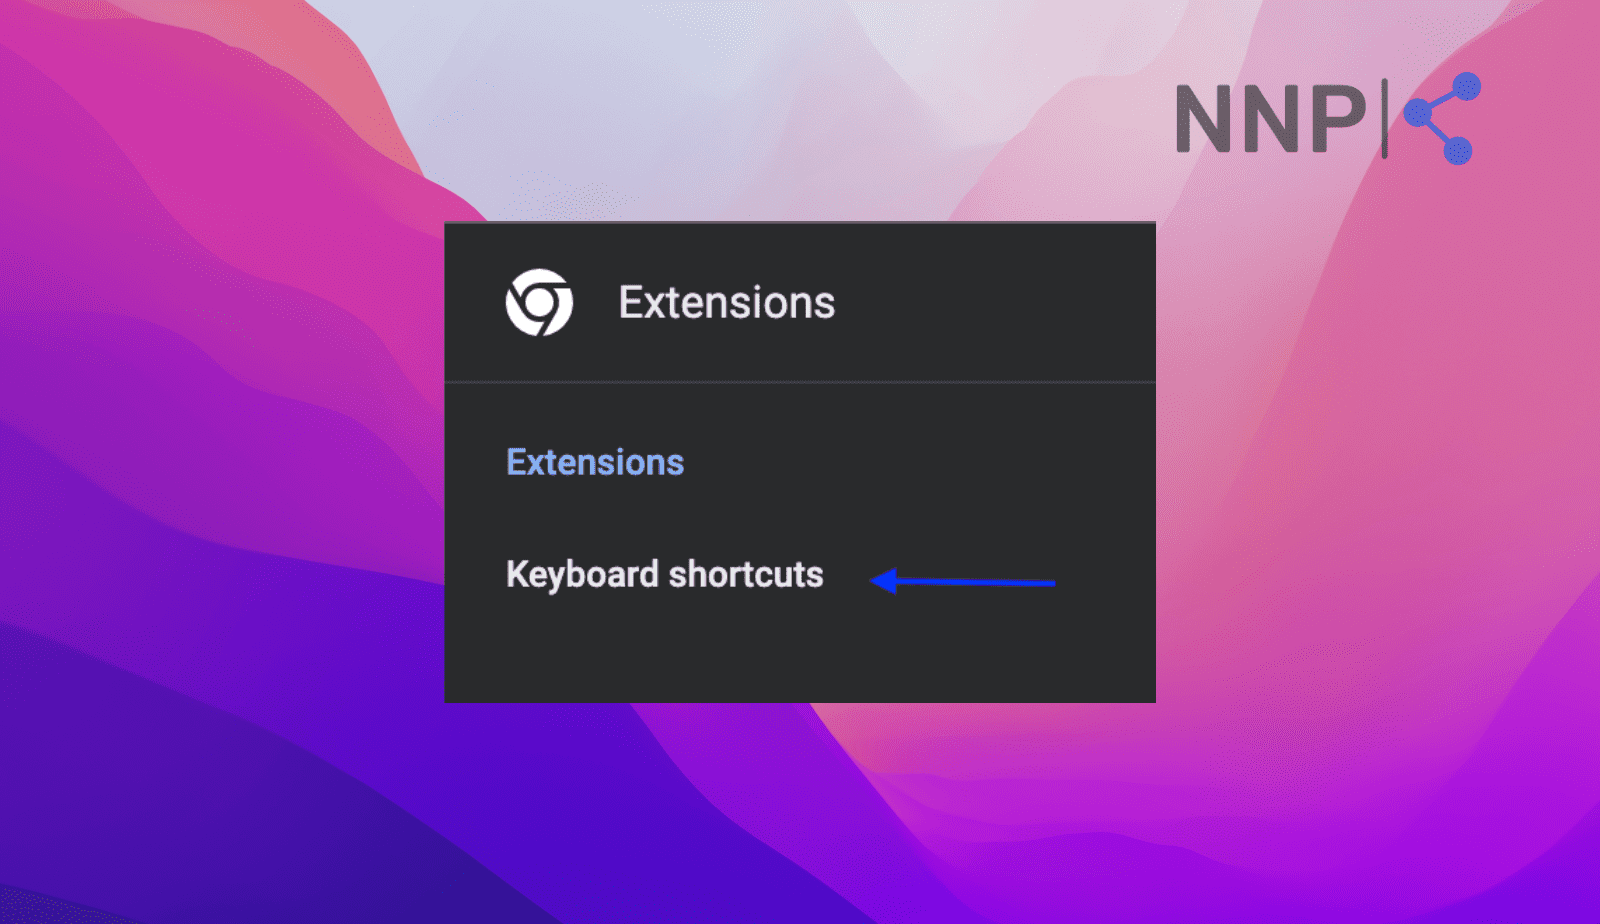 Click 'Keyboard shortcuts'